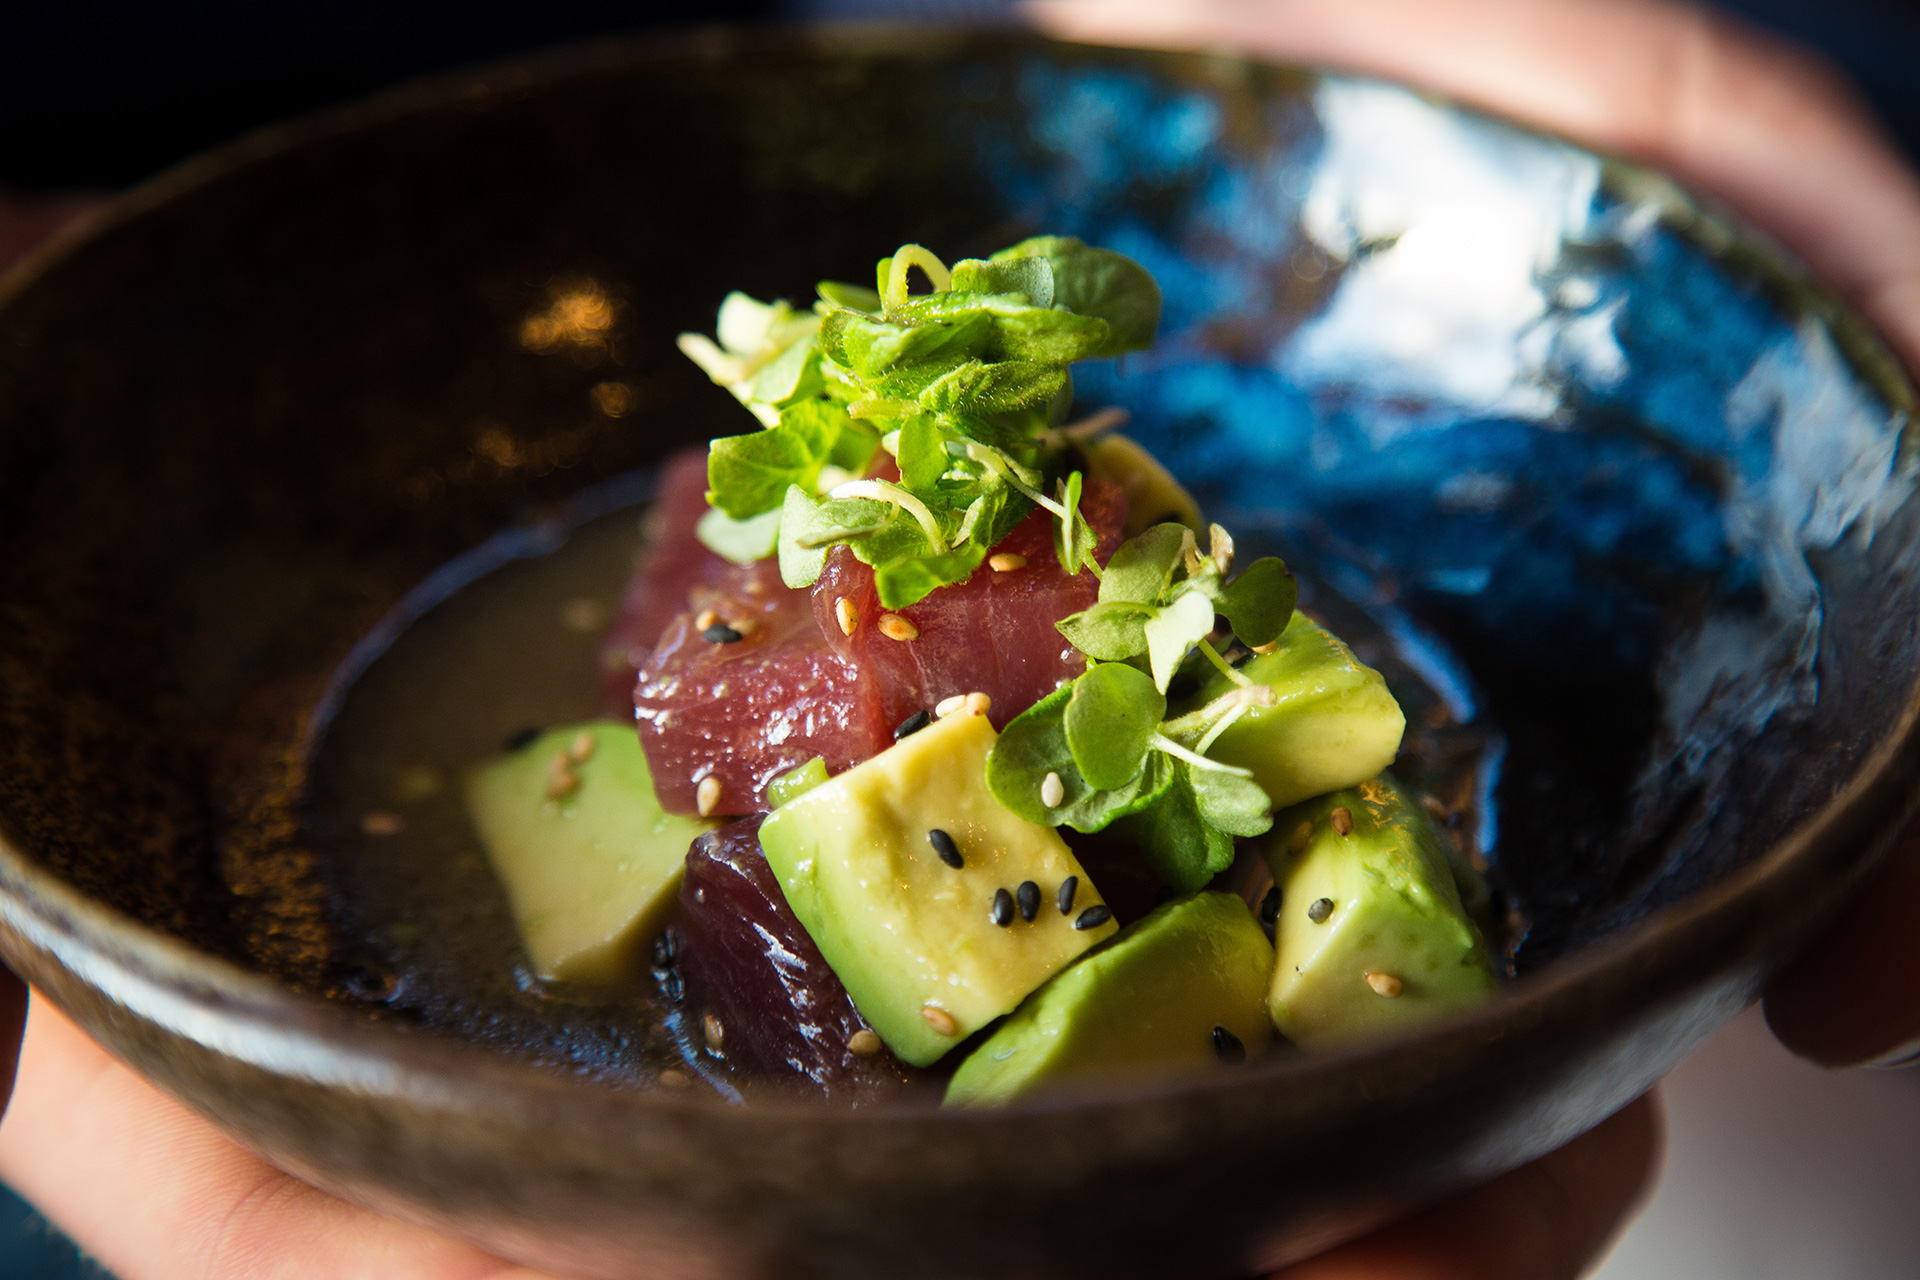 Maguro (Big Eye Tuna) Avocado Salad